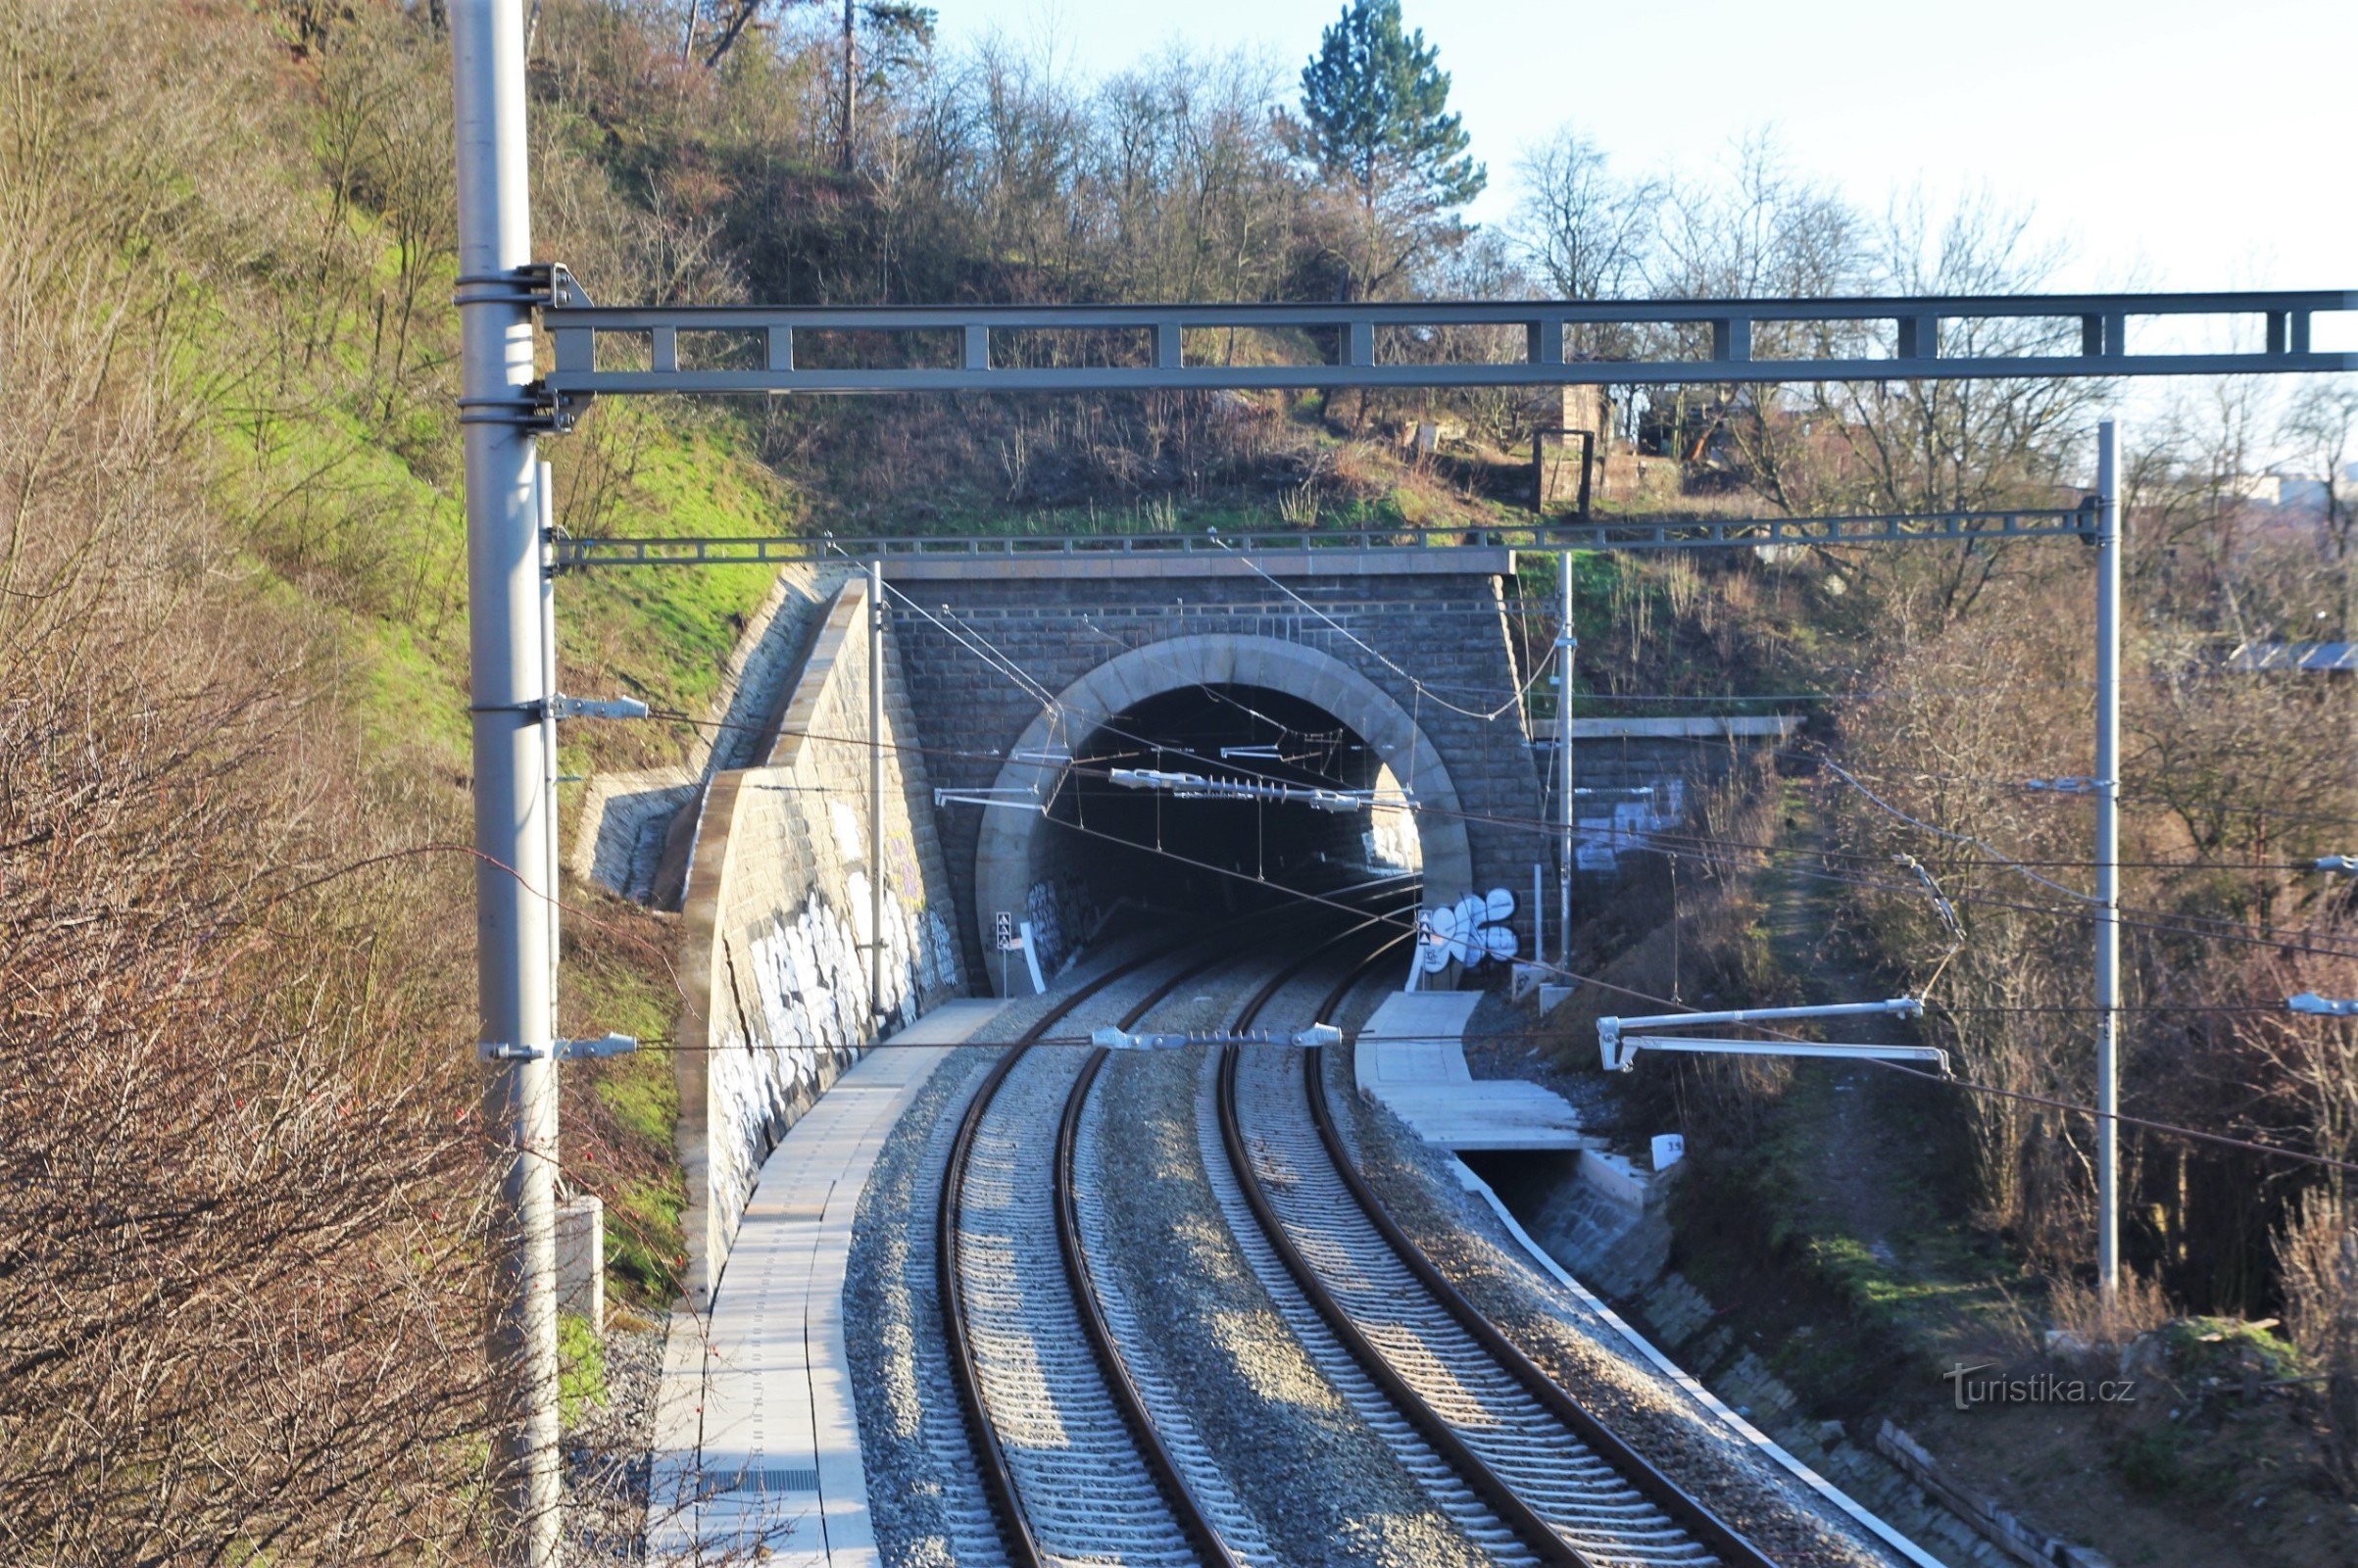 Obránsky dobbeltsporet tunnel